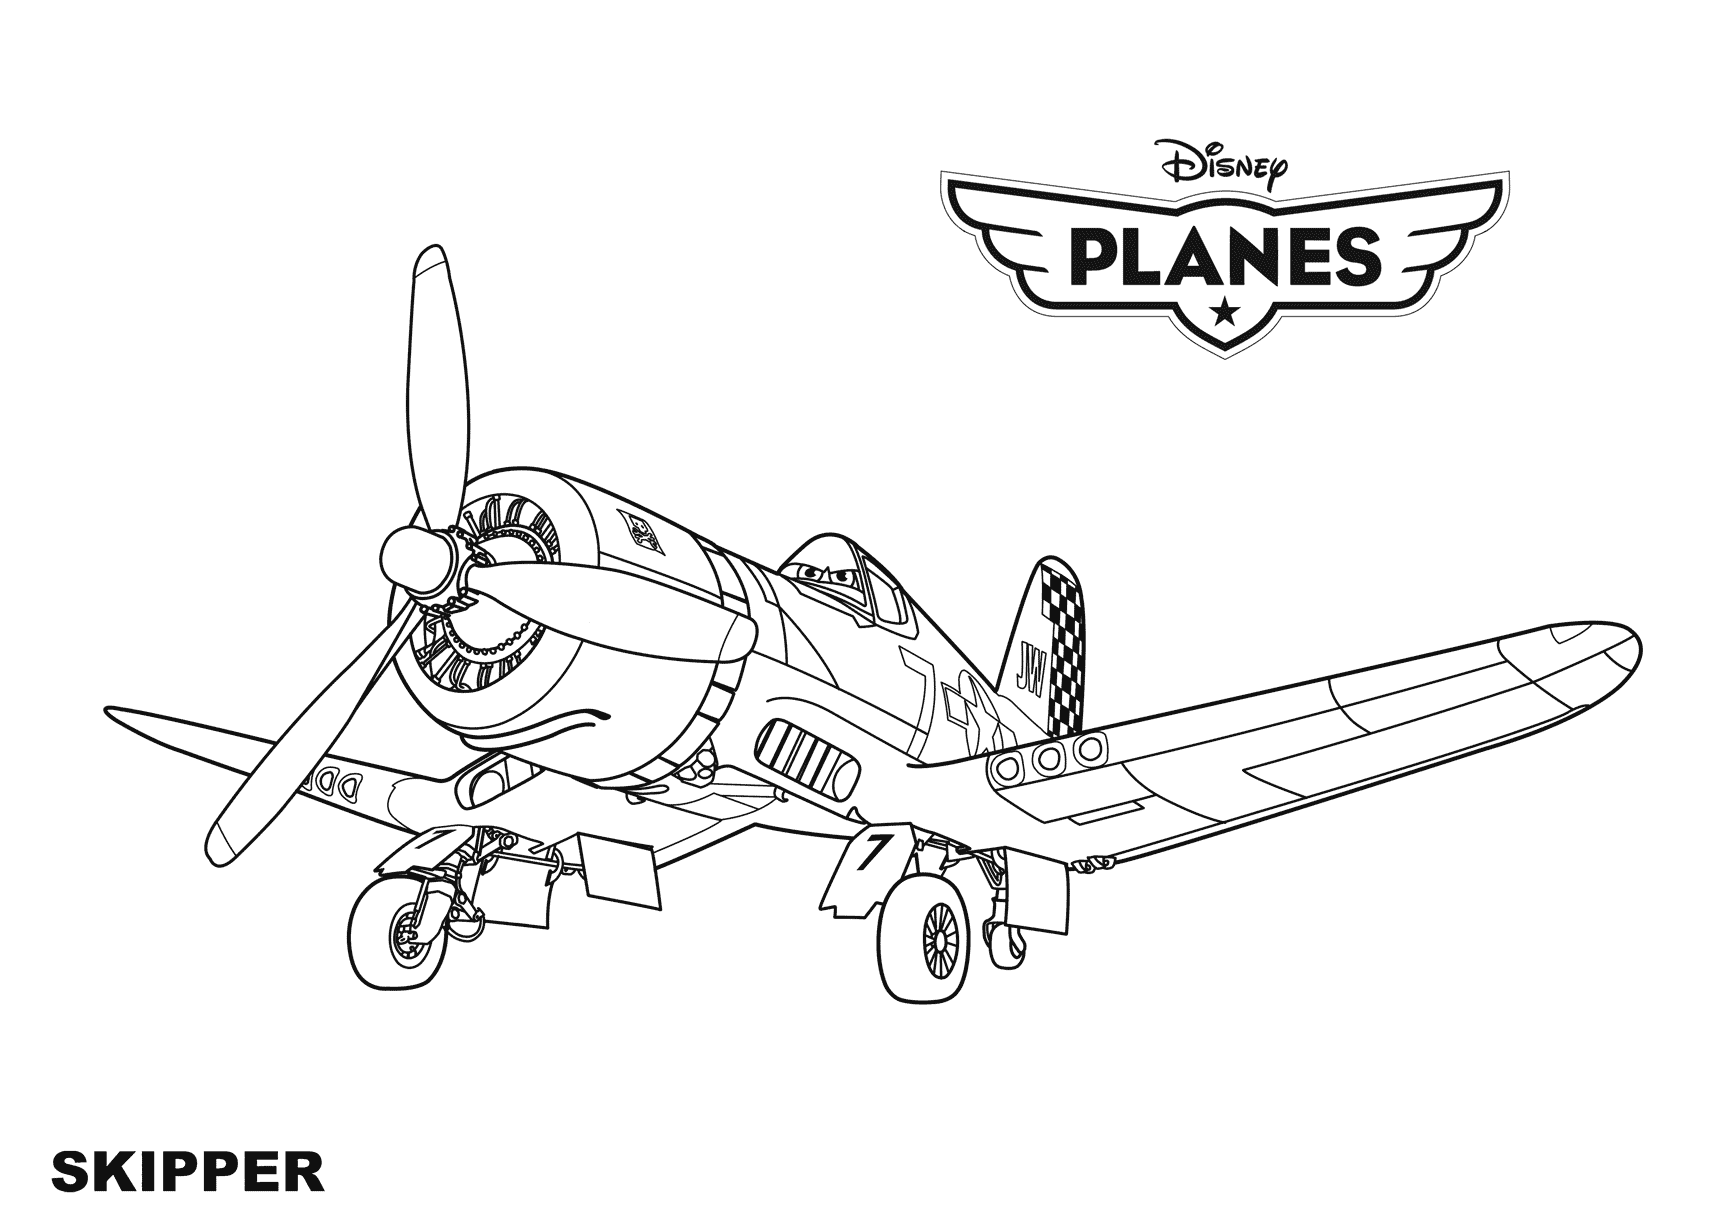 Skipper – Planess